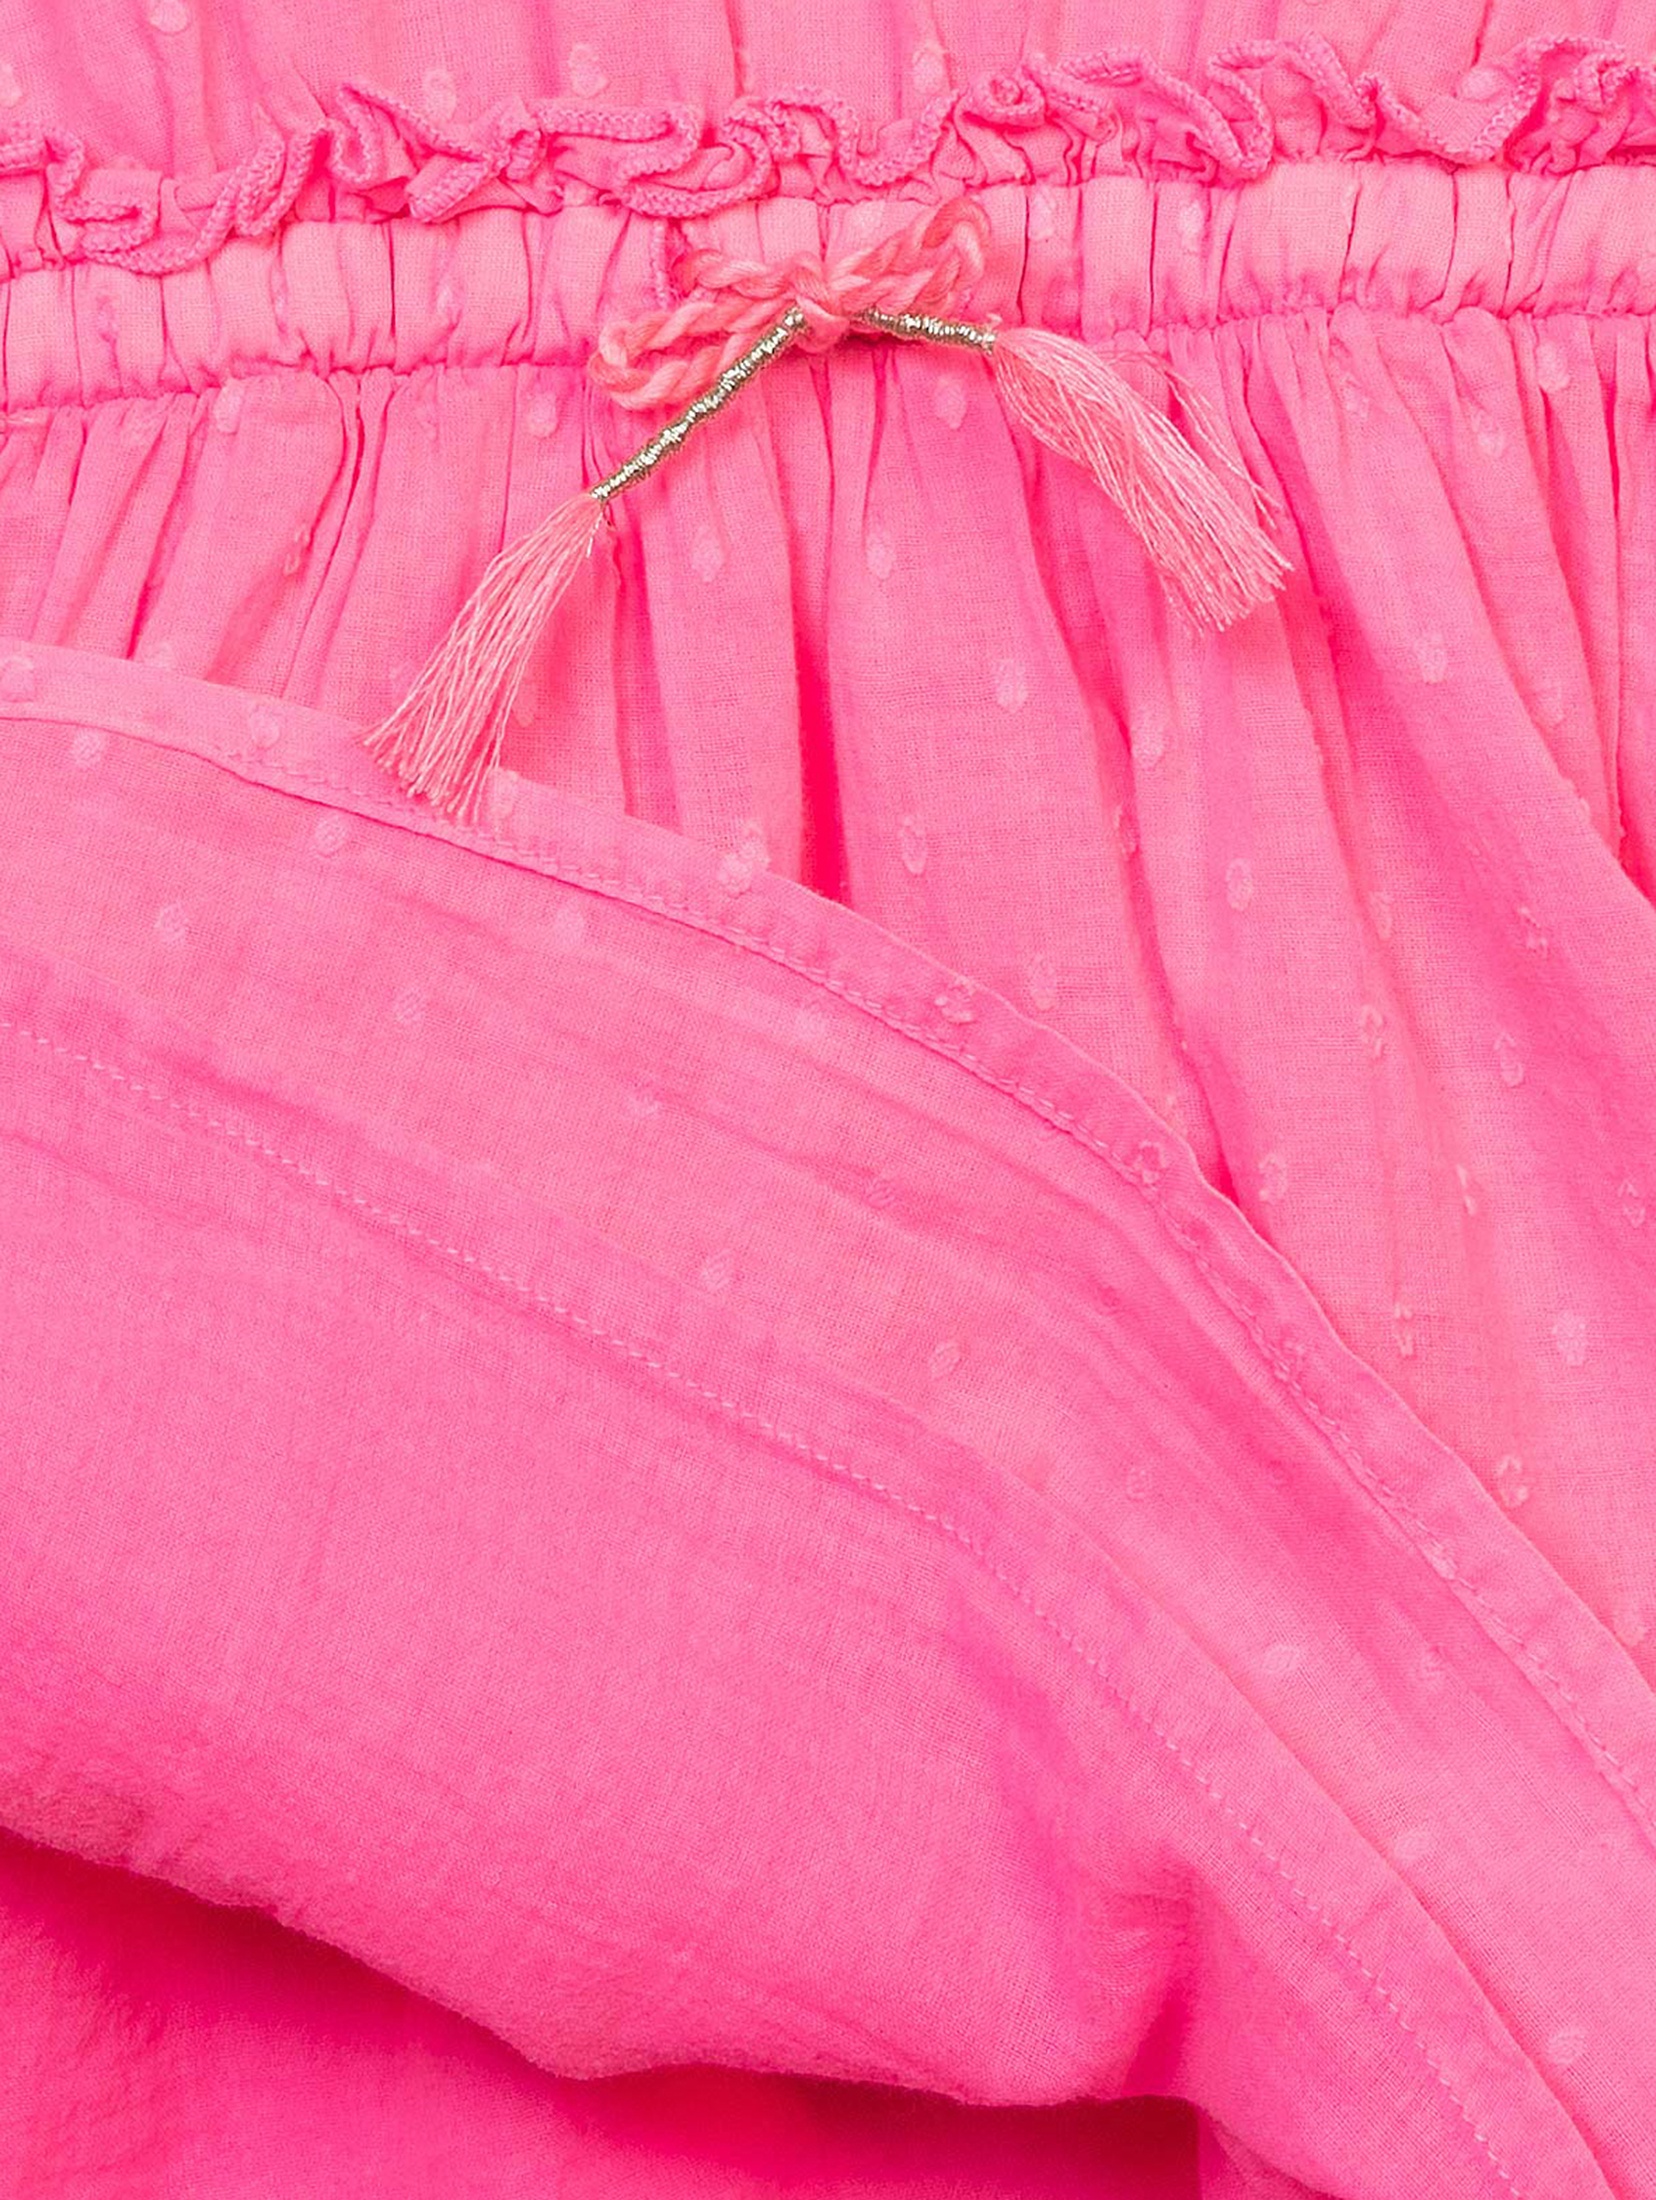 Różowa sukienka niemowlęca bawełniania z wiązaniem